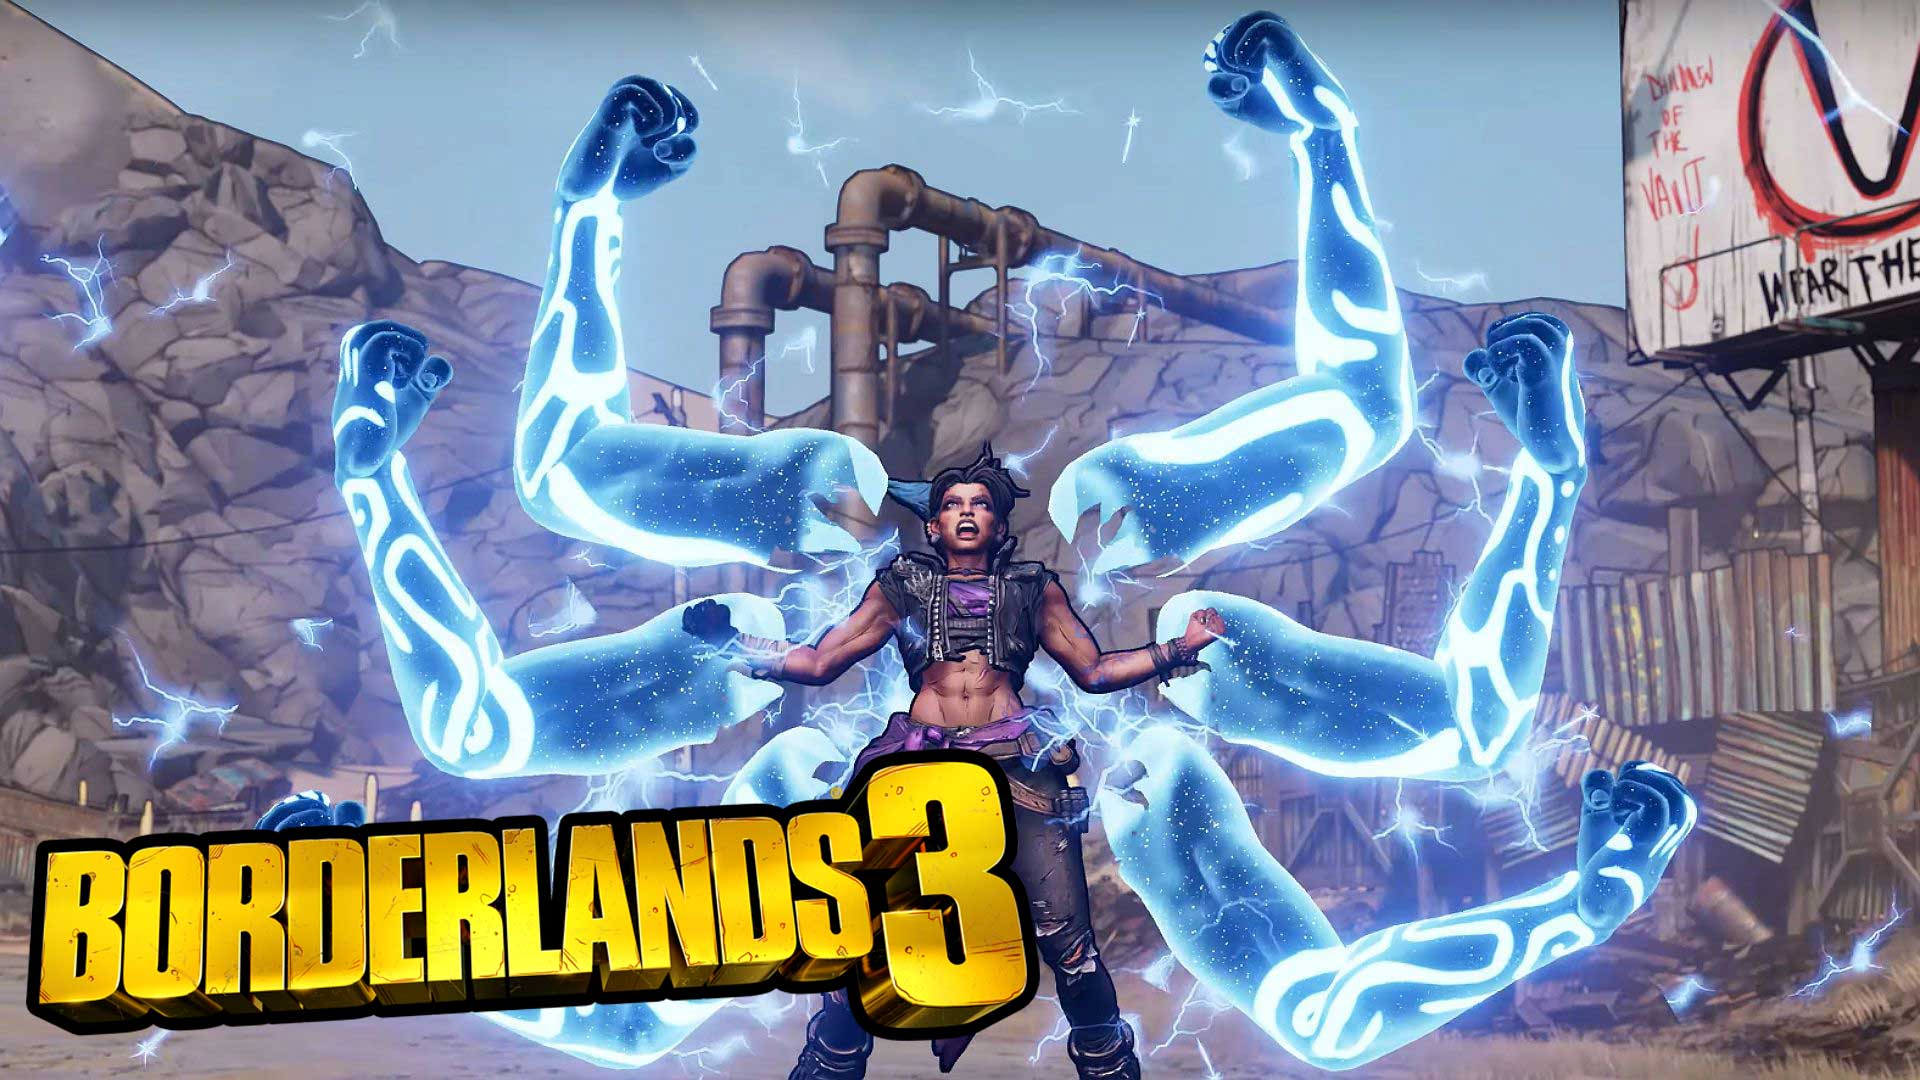 Borderlands 3 release date